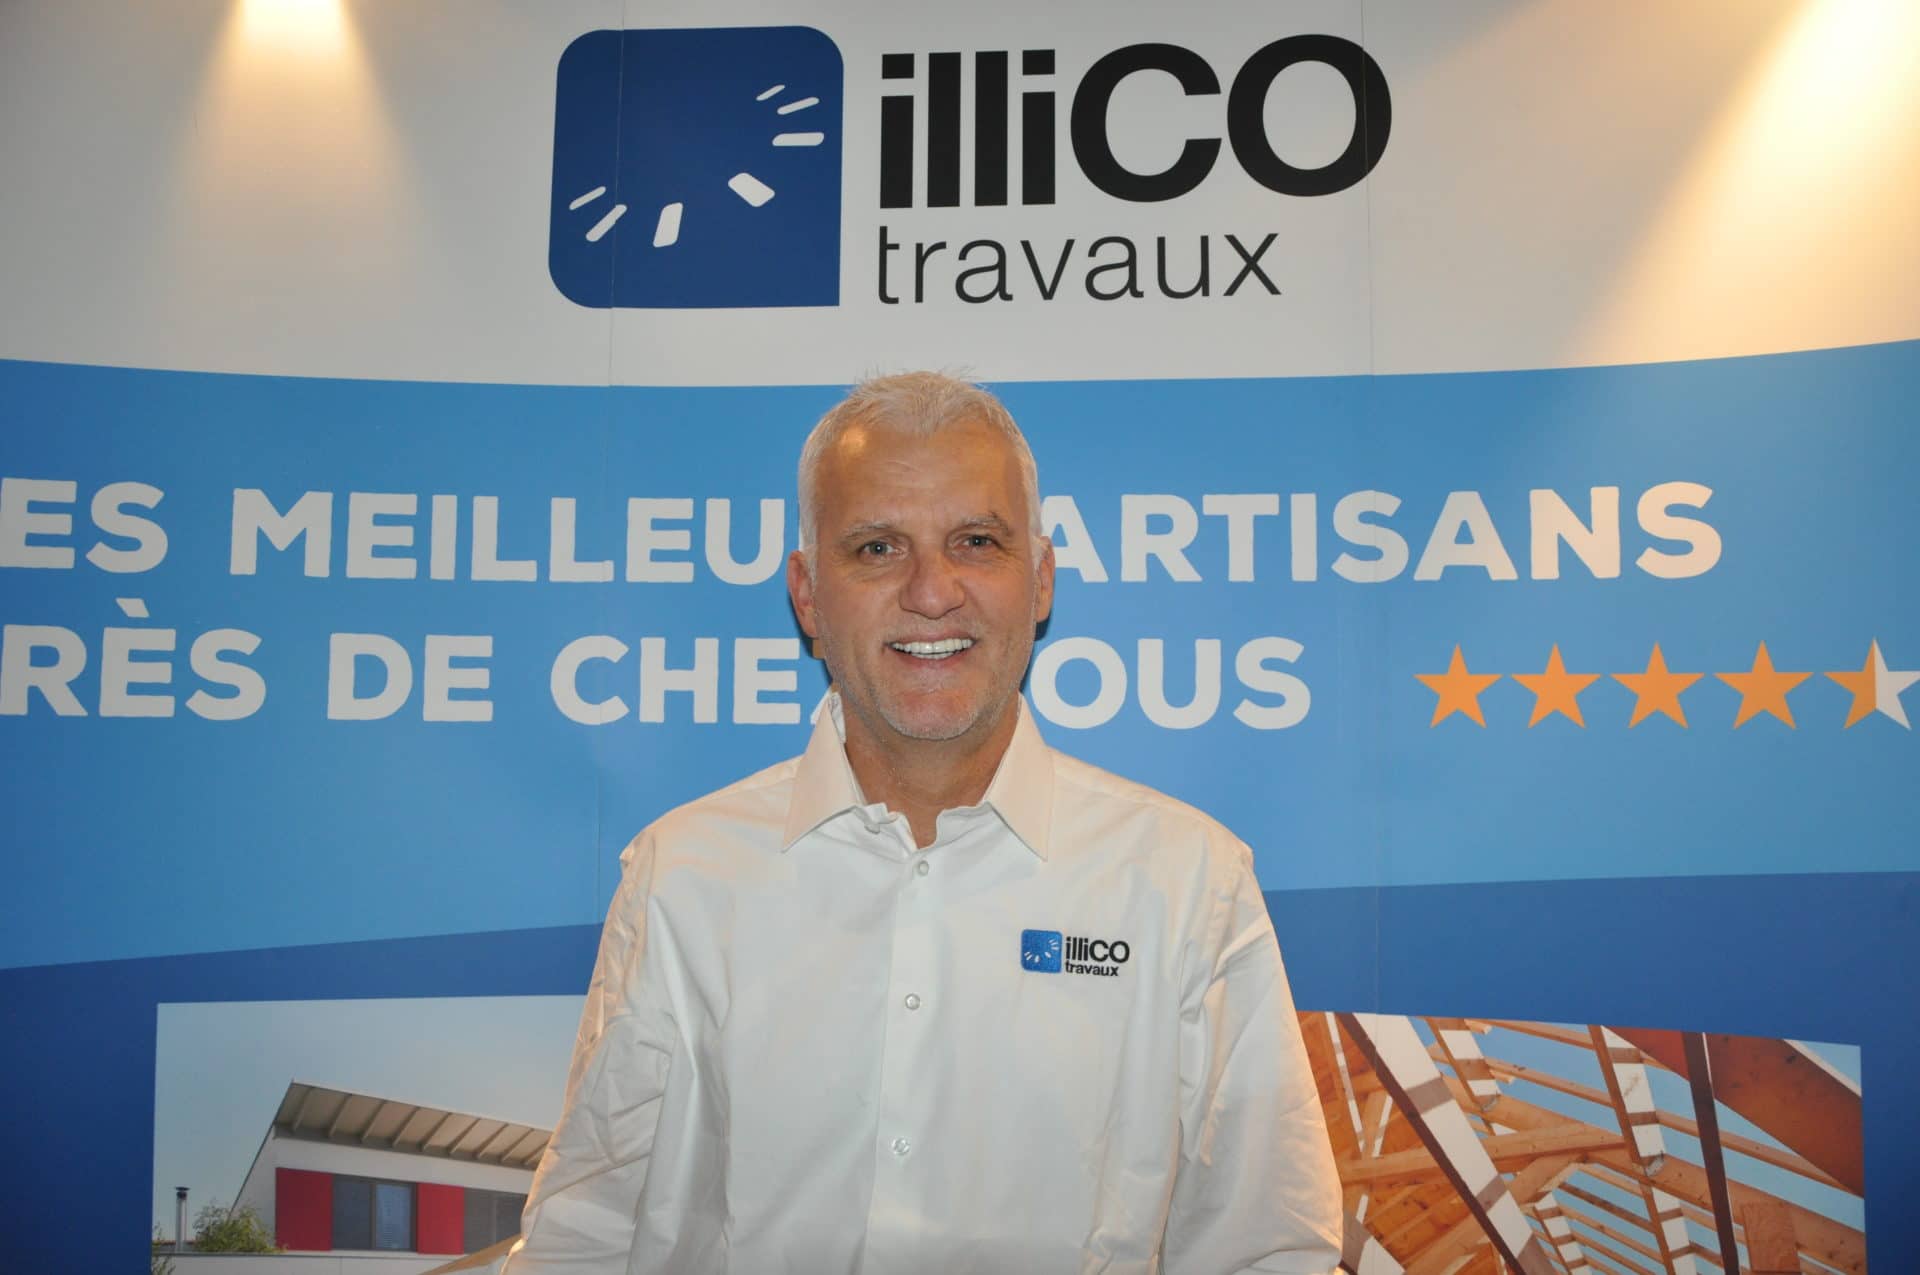 Témoignage d’Olivier CANZLER, responsable de l’agence illiCO travaux Aix en Provence